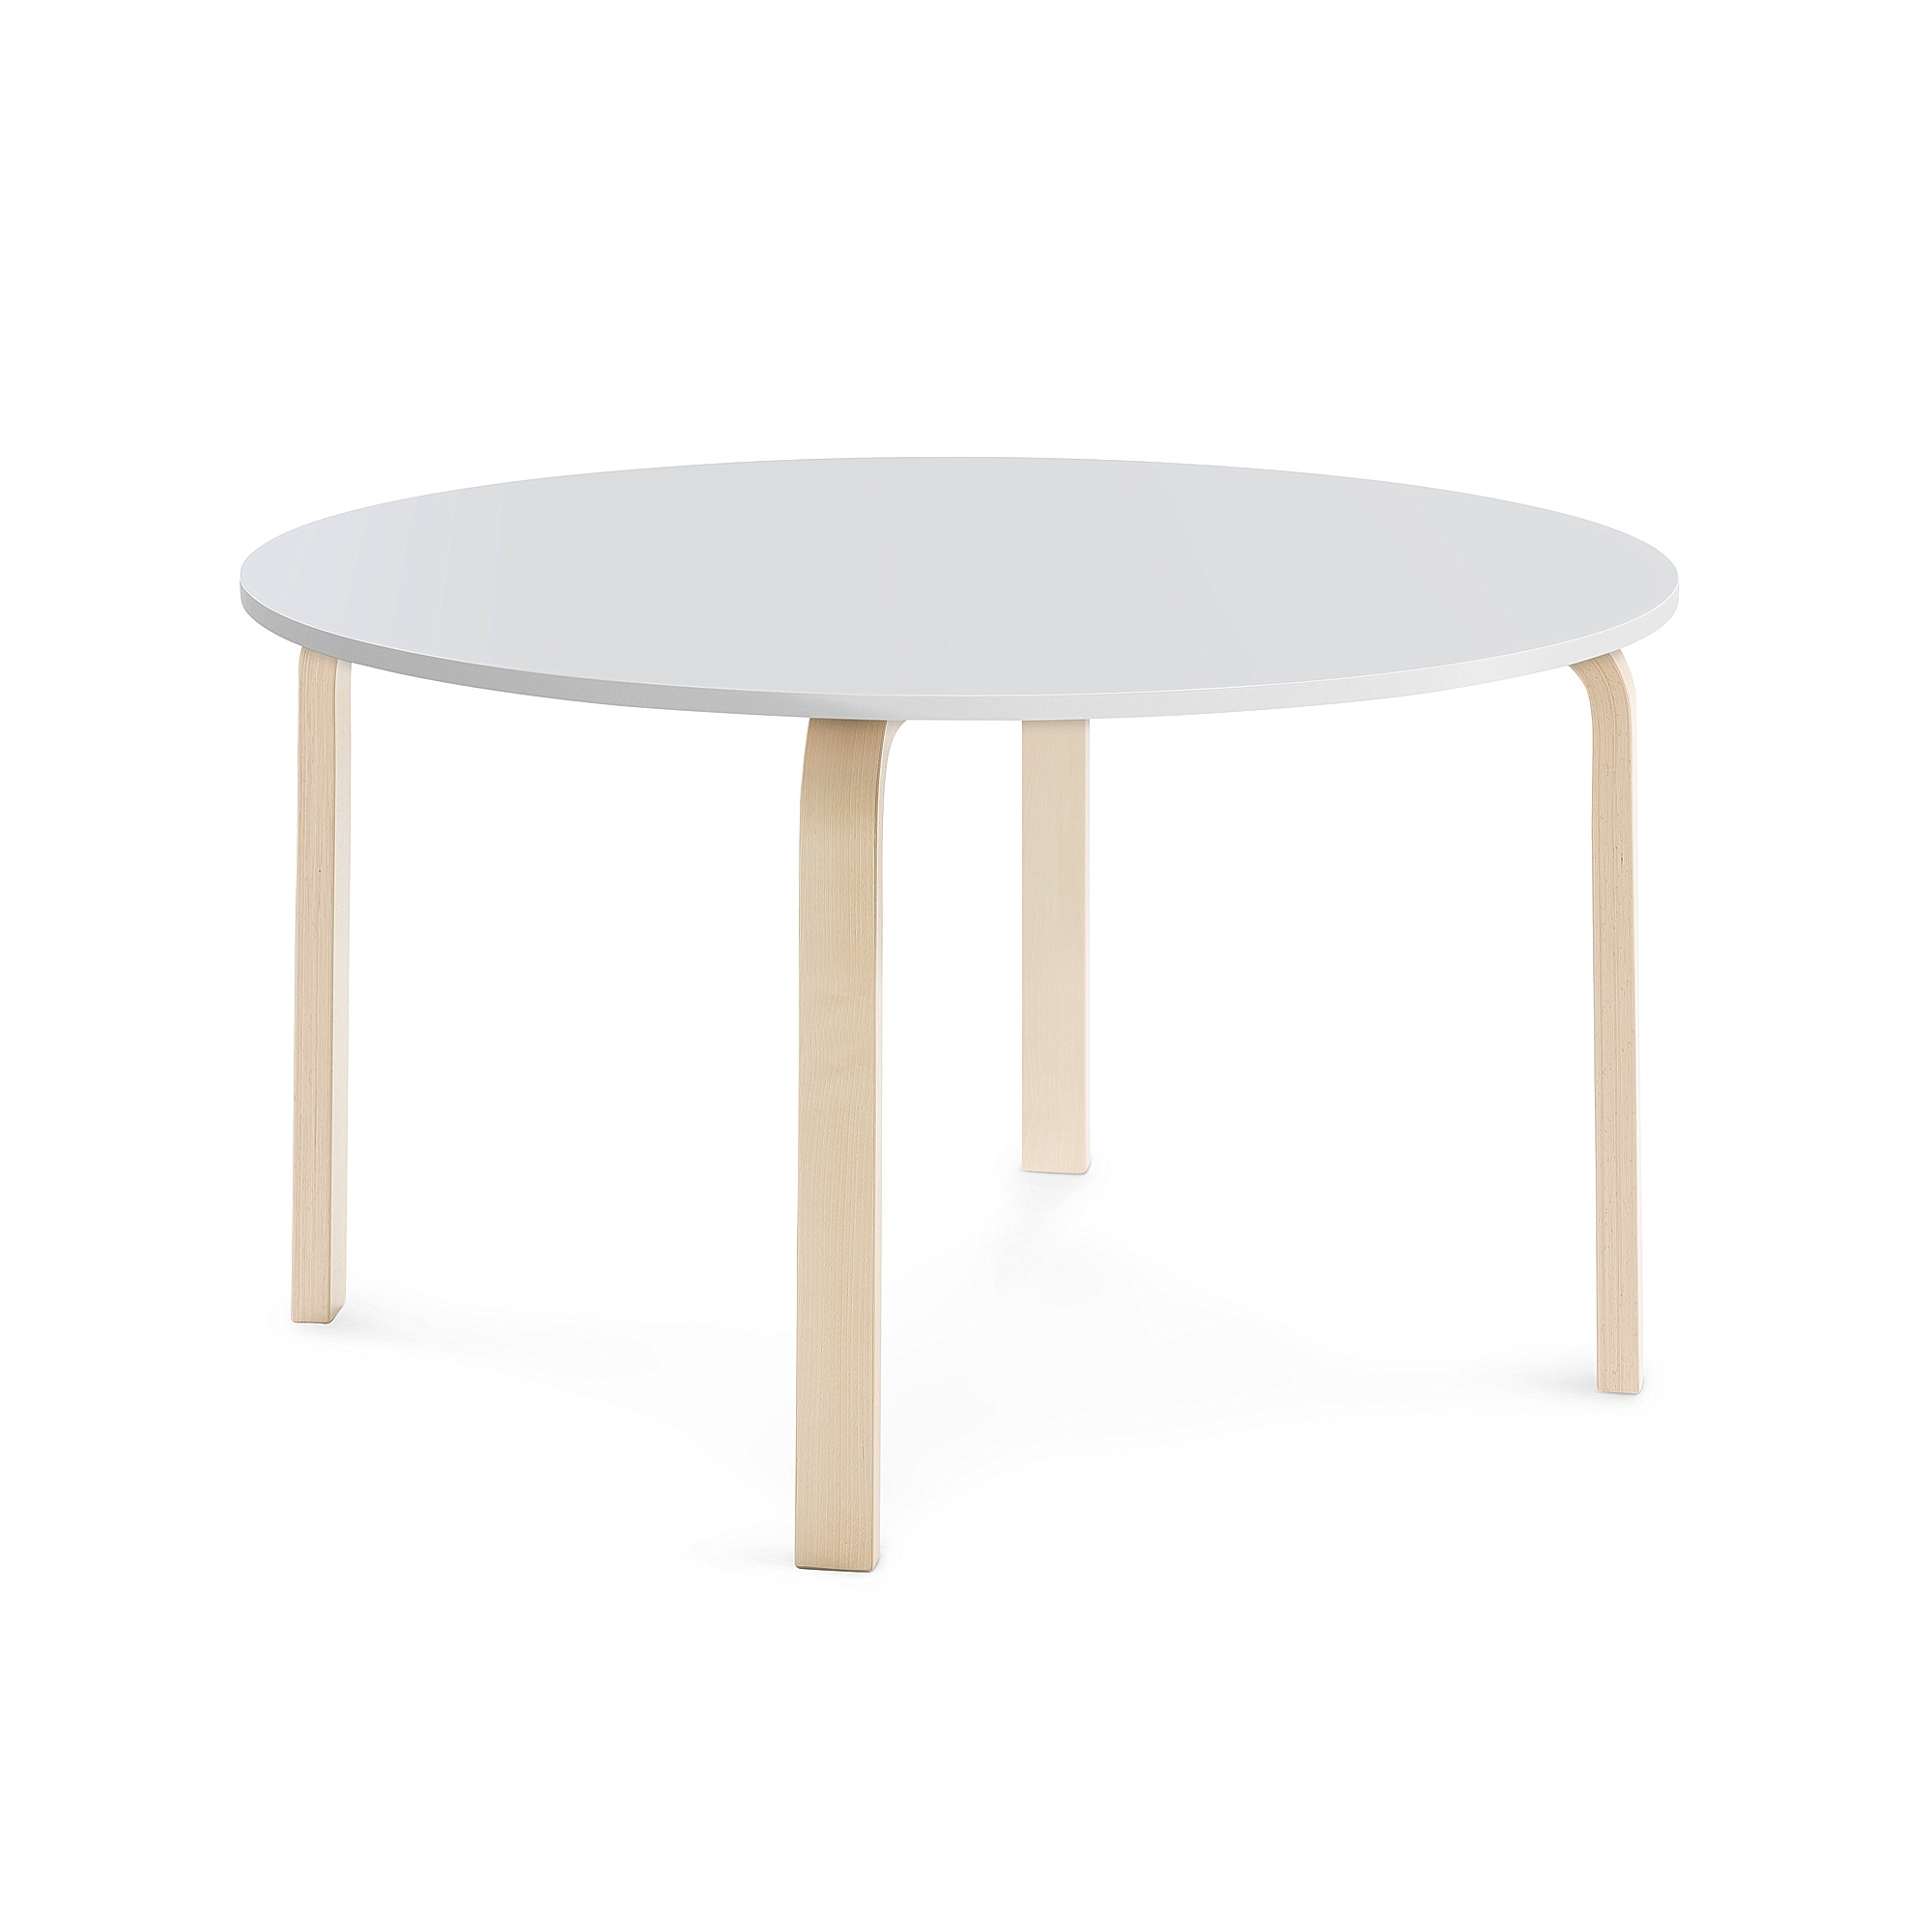 Stůl ELTON, Ø 1200x640 mm, bříza, akustická HPL deska, bílá